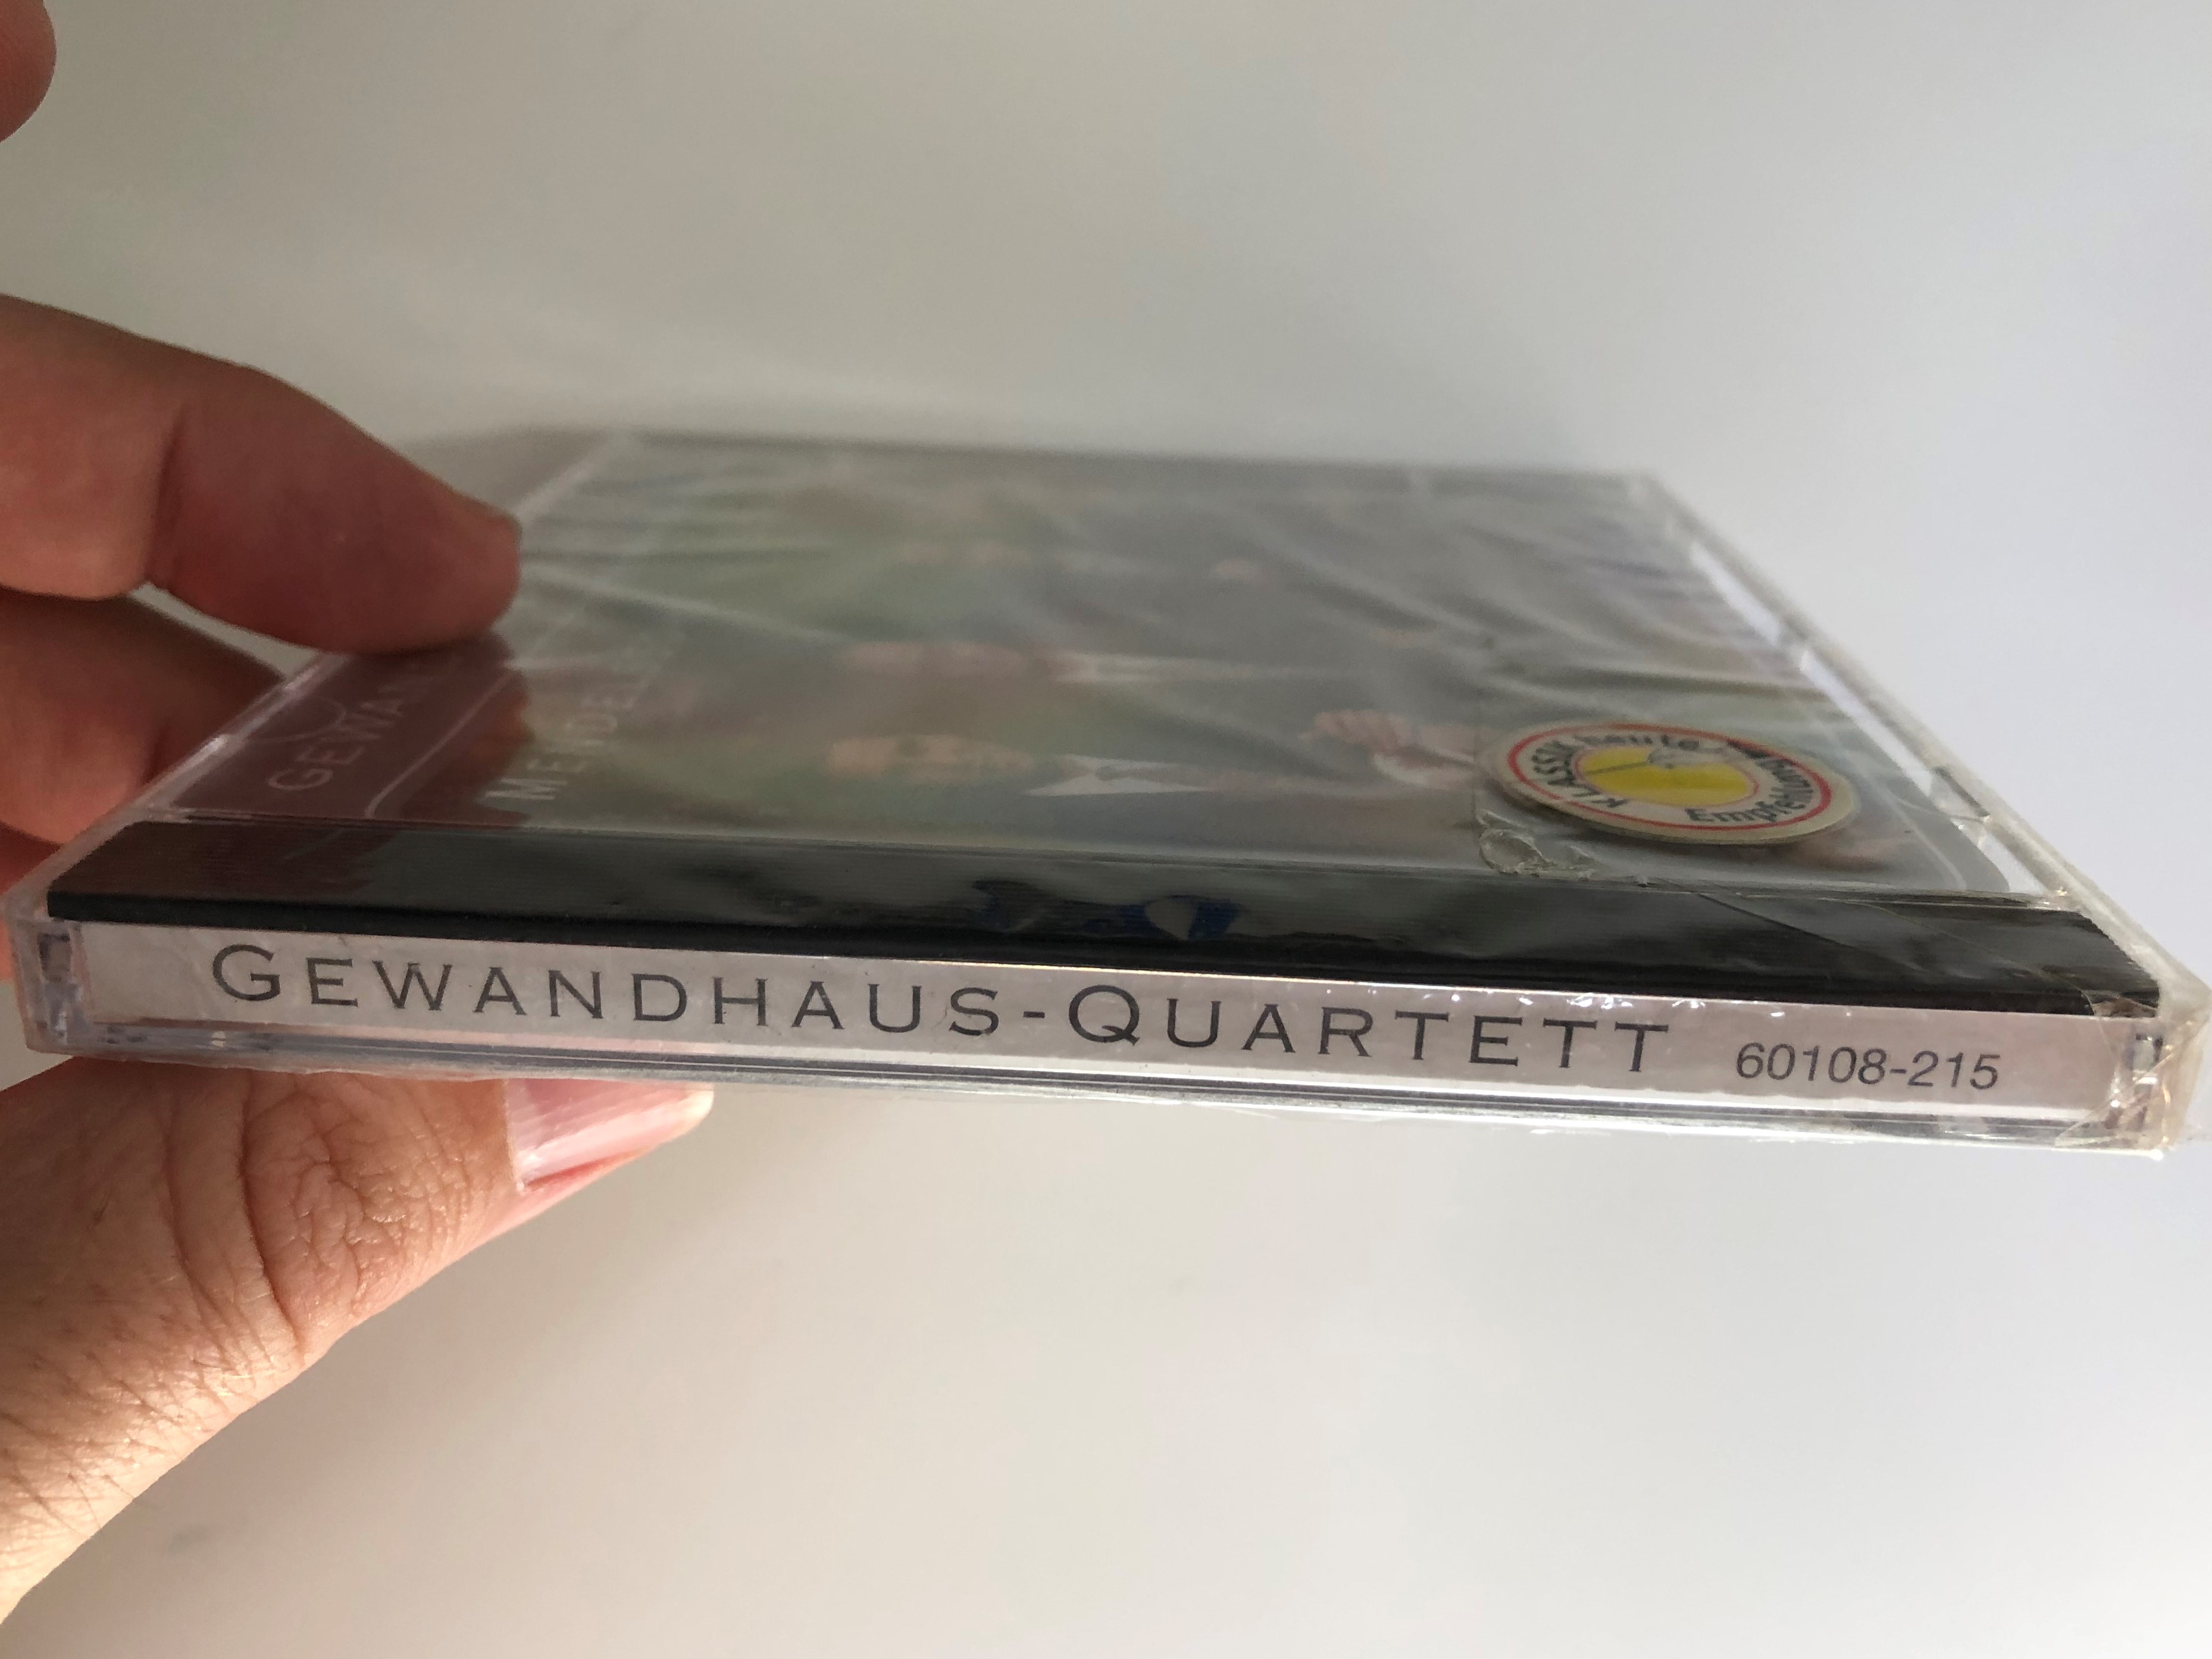 gewandhaus-quartett-mendelssohn-schumann-new-classical-adventure-audio-cd-2000-60108-215-3-.jpg